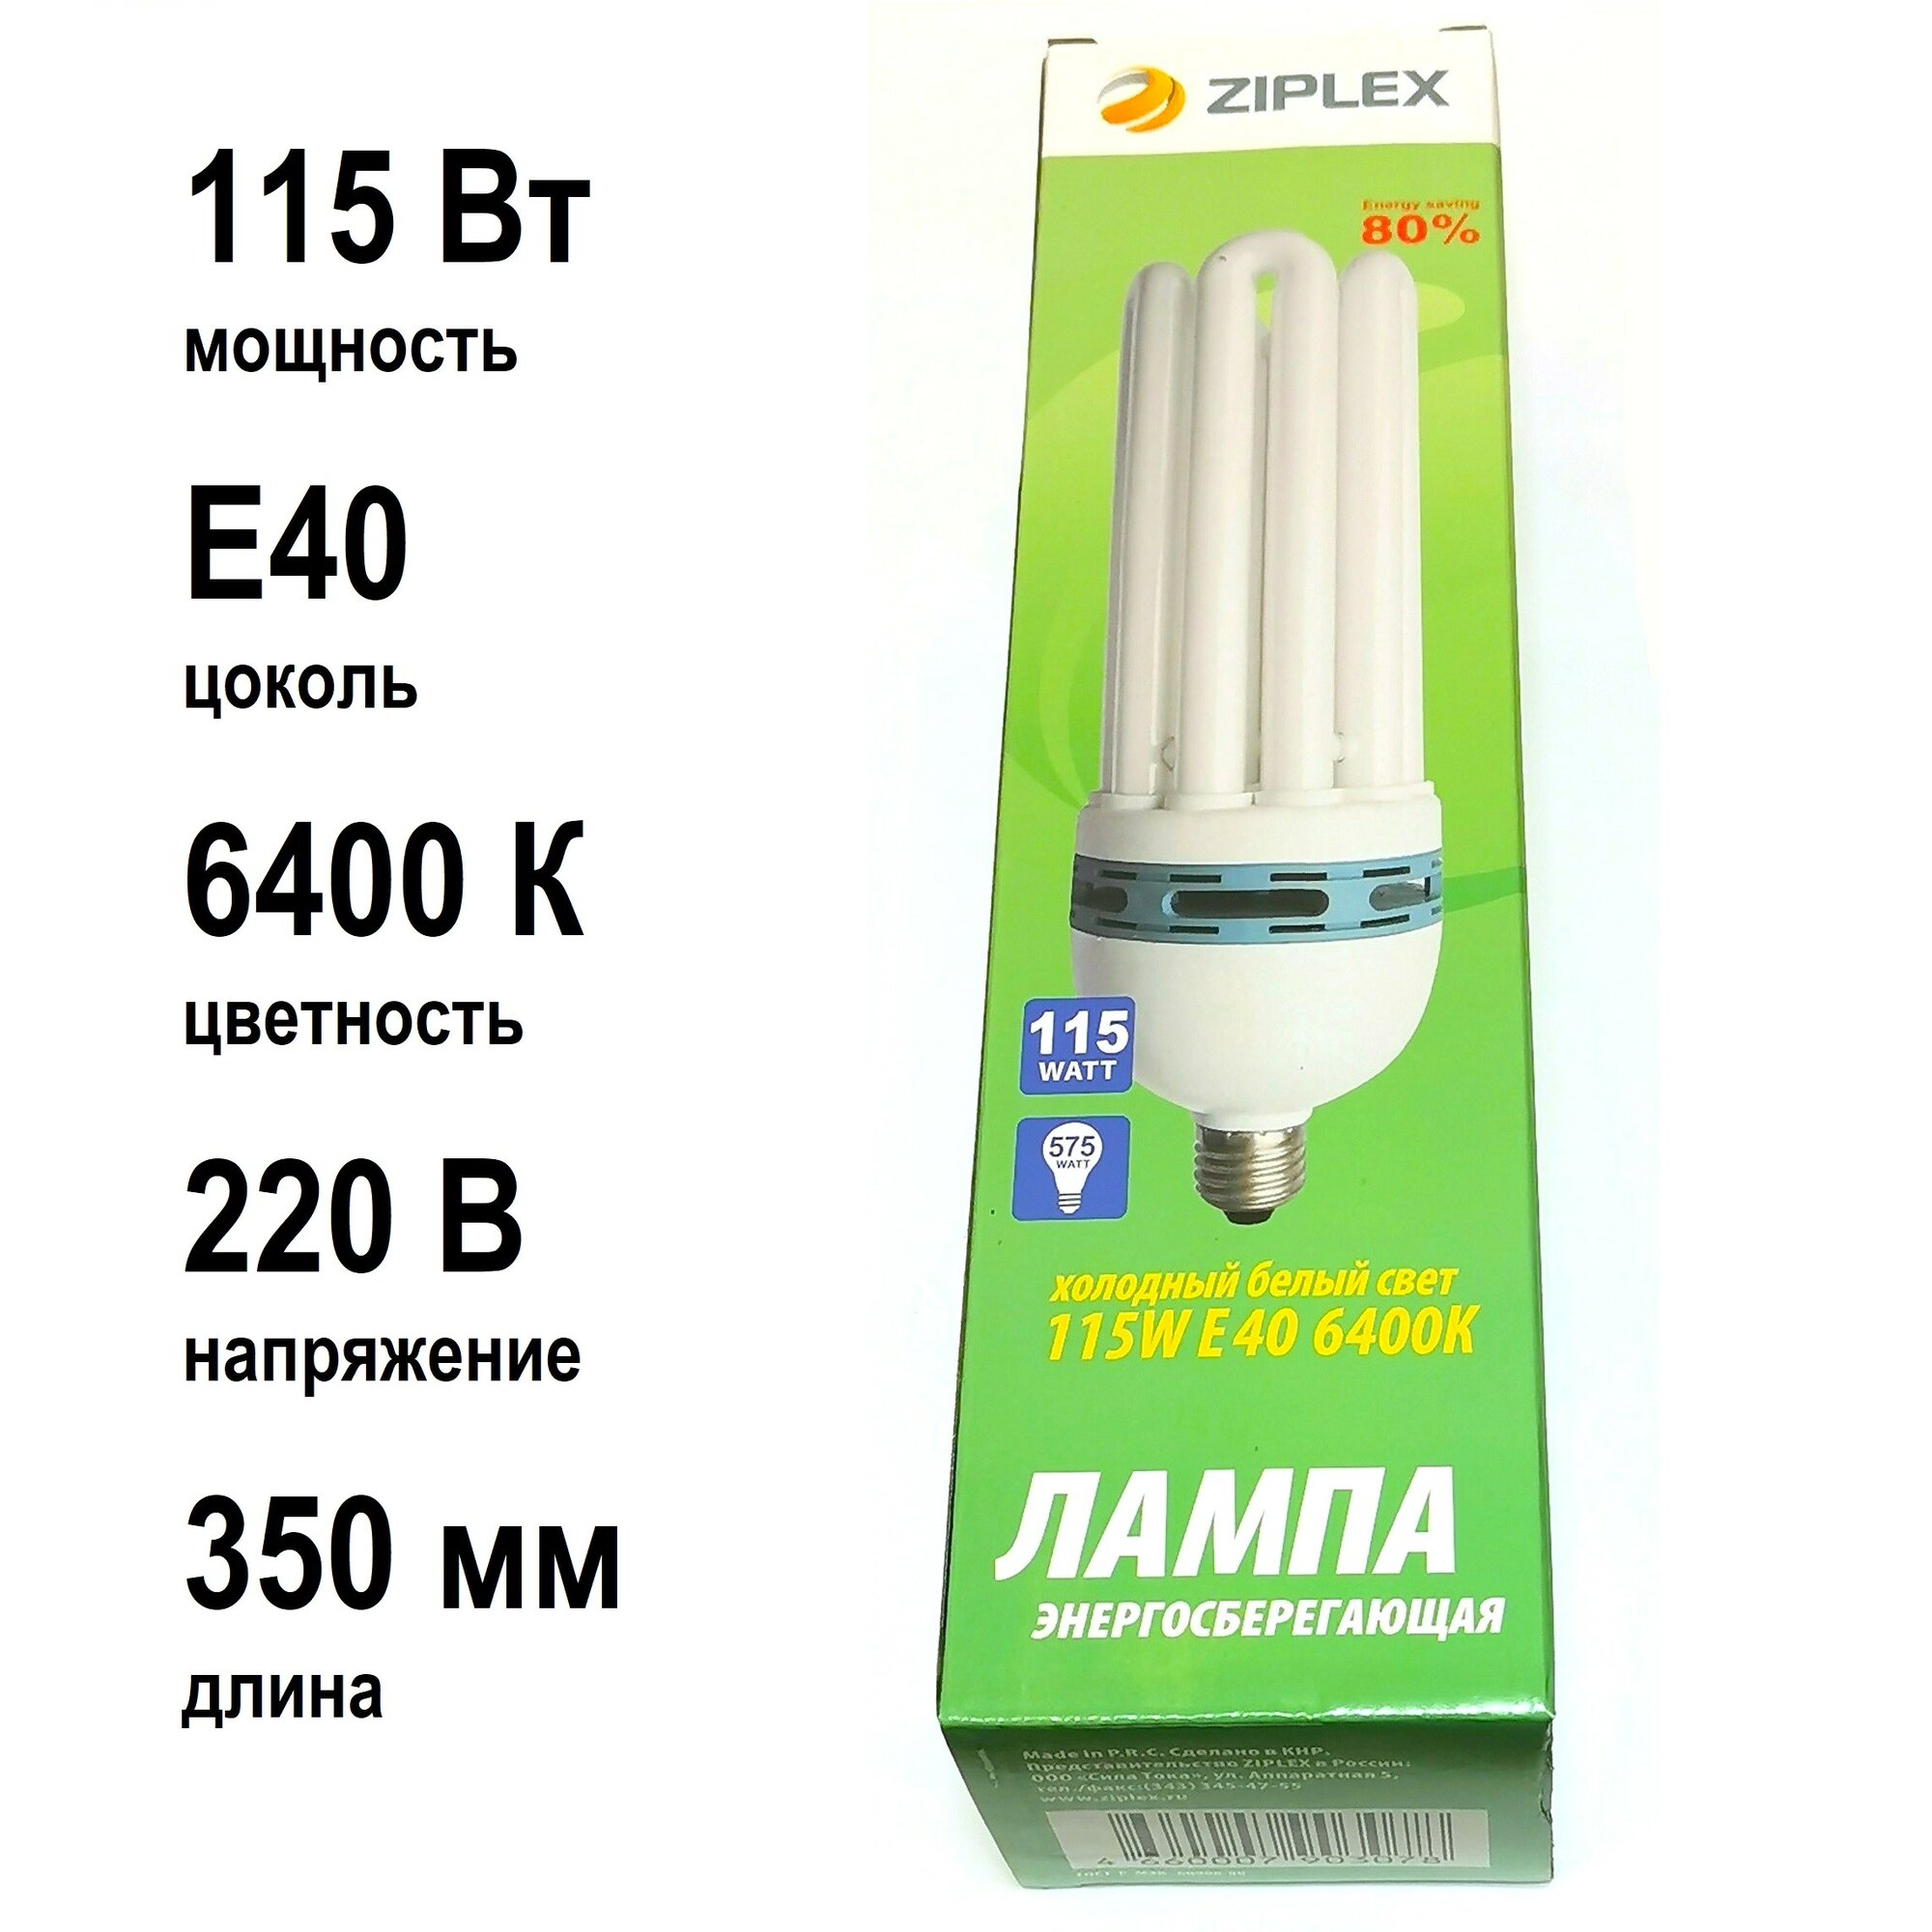 Лампа Ziplex 5U-115W-E40-6400-220v 8000ч 90307